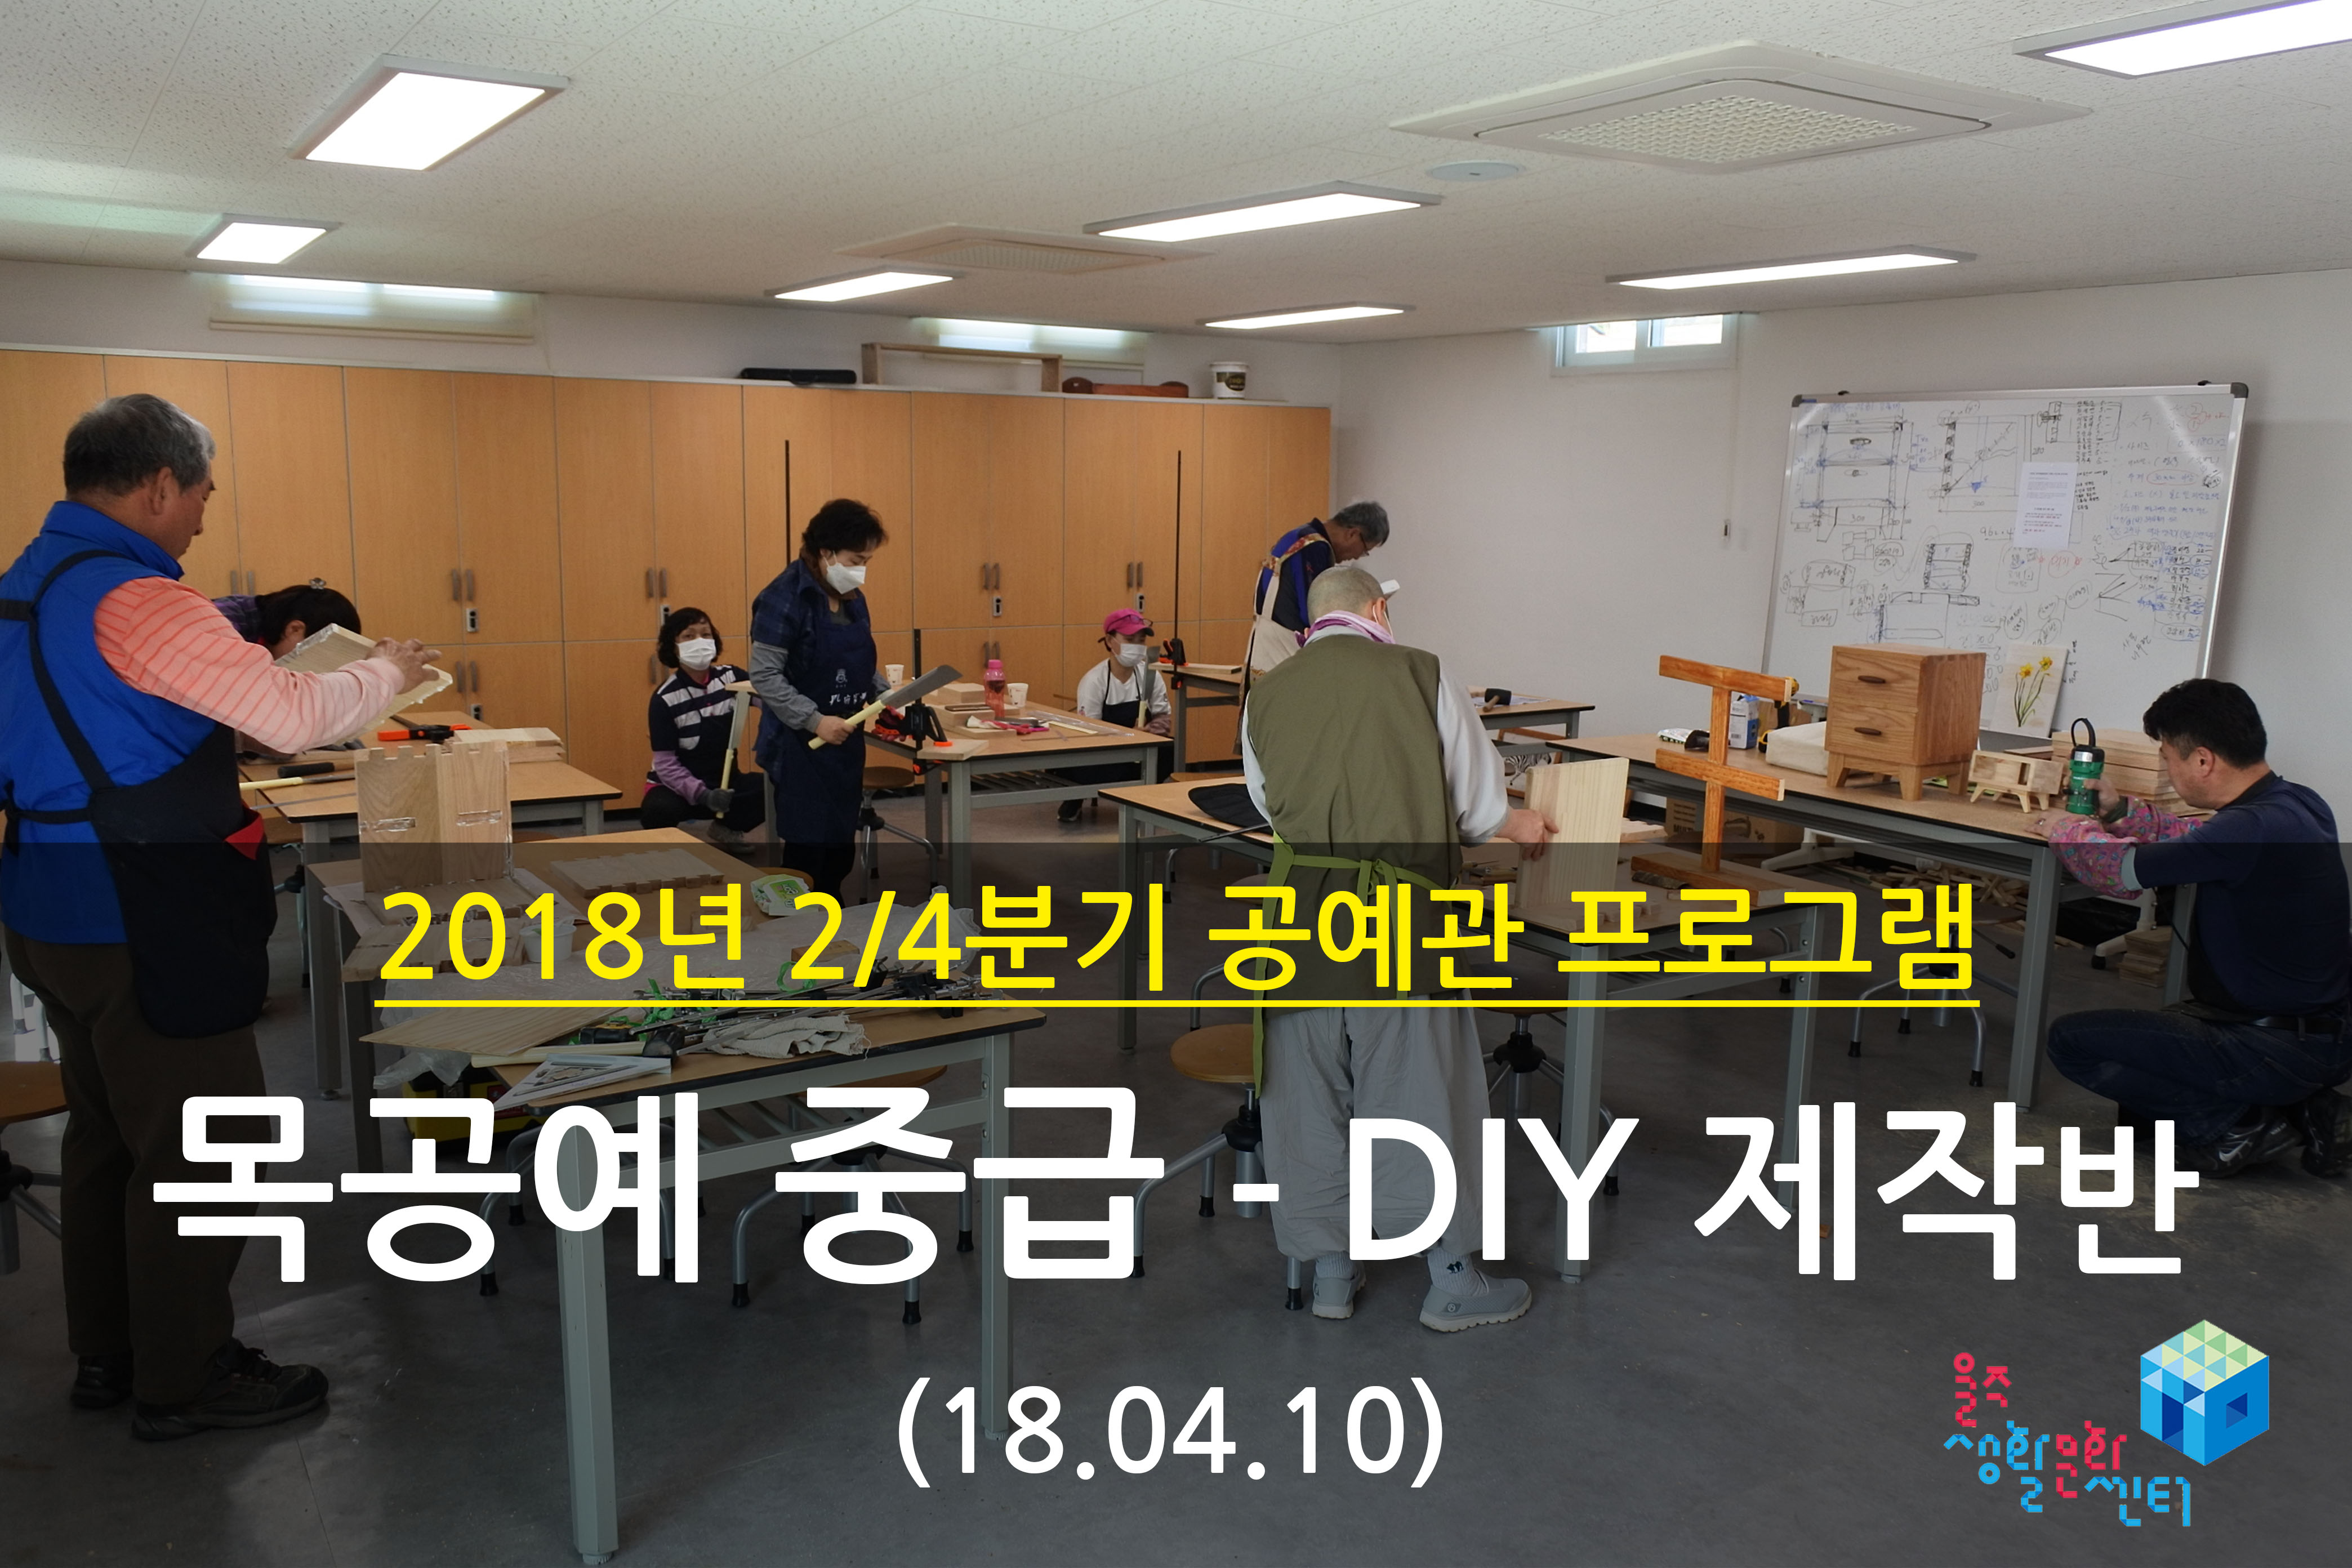 2018.04.10 _ 목공예 중급 - DIY 제작반 _ 2/4분기 2주차 수업